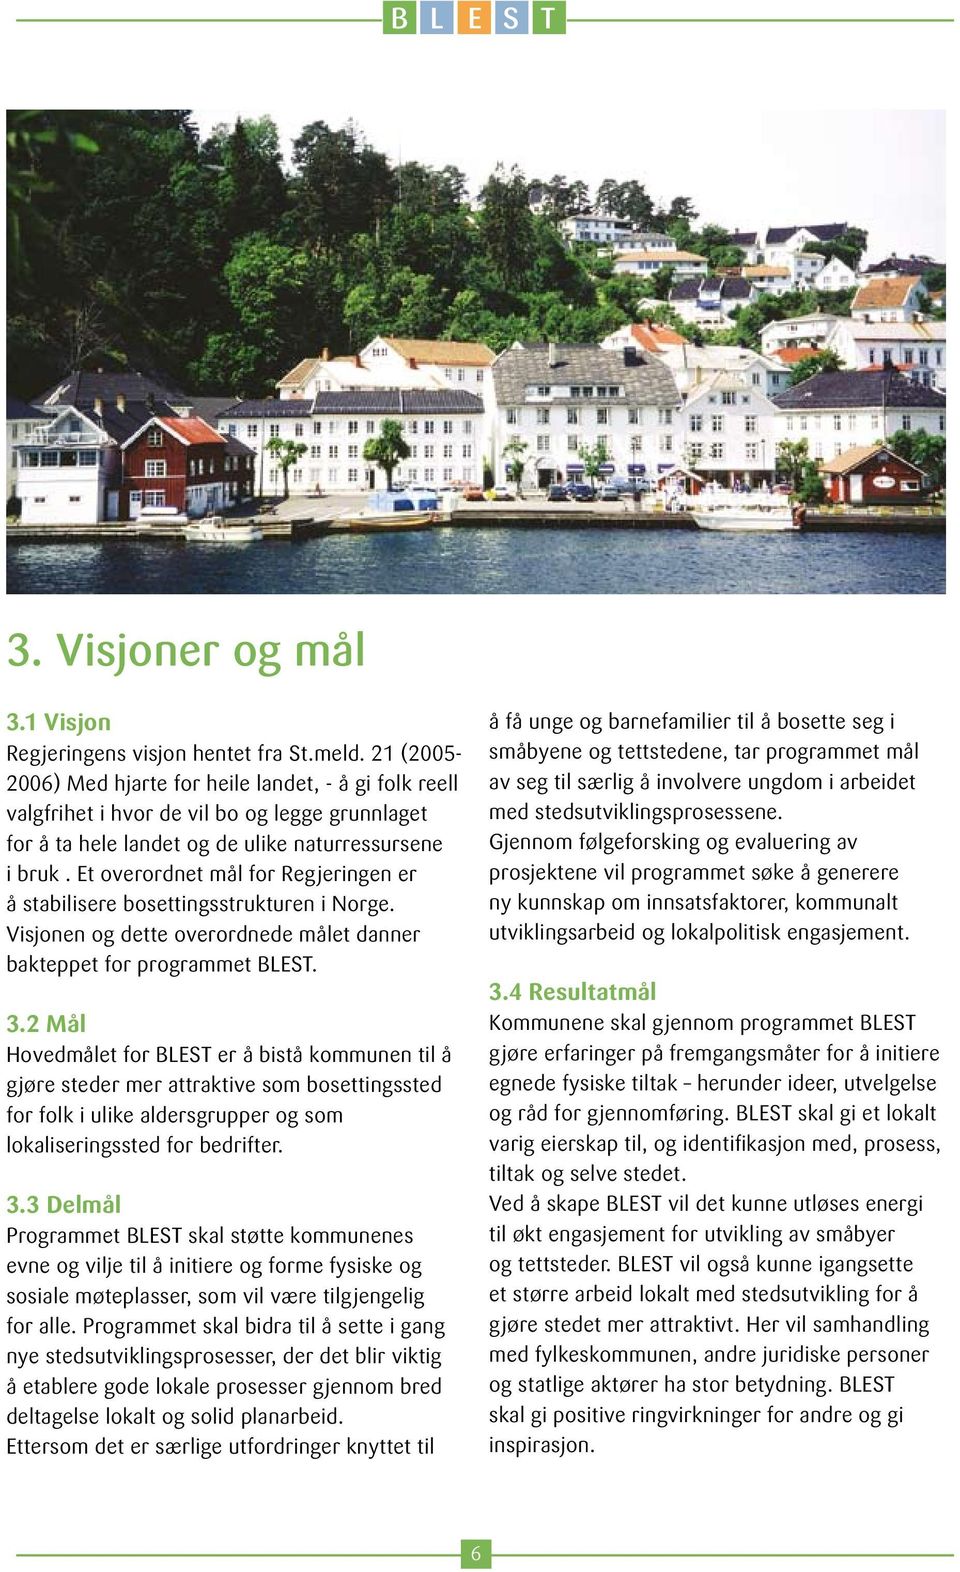 Et overordnet mål for Regjeringen er å stabilisere bosettingsstrukturen i Norge. Visjonen og dette overordnede målet danner bakteppet for programmet BLEST. 3.